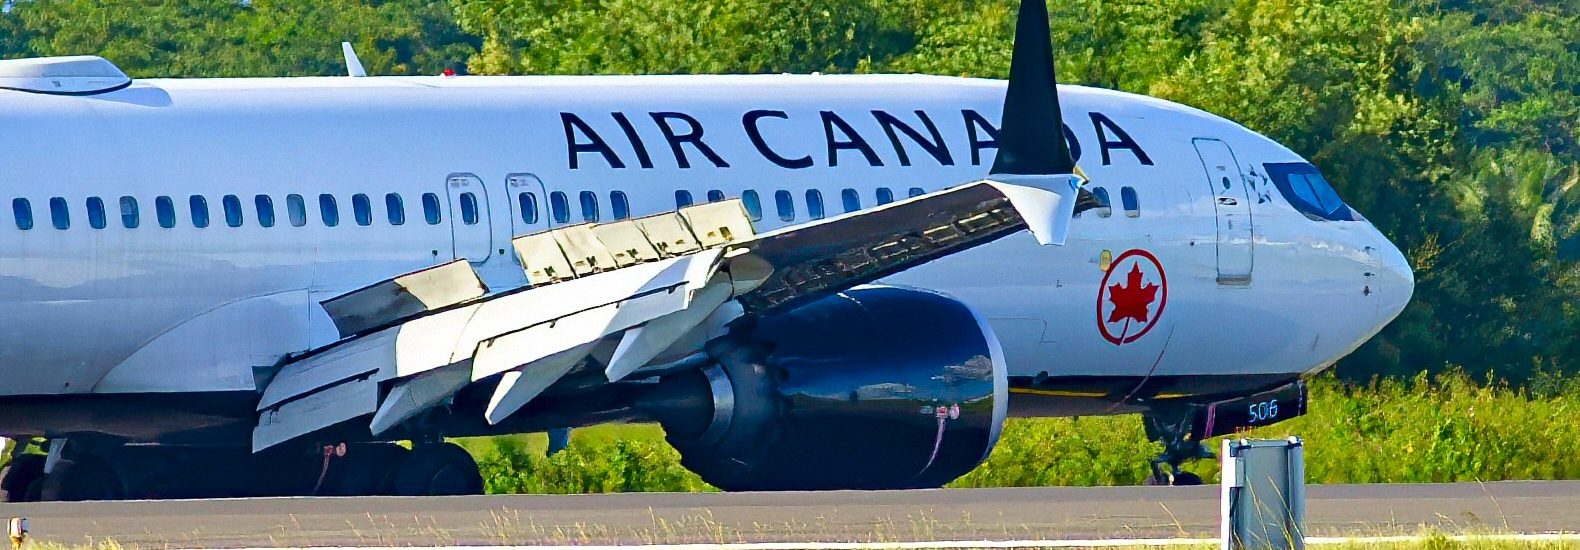 B737 MAX-8 Air Canada C-FSEQ